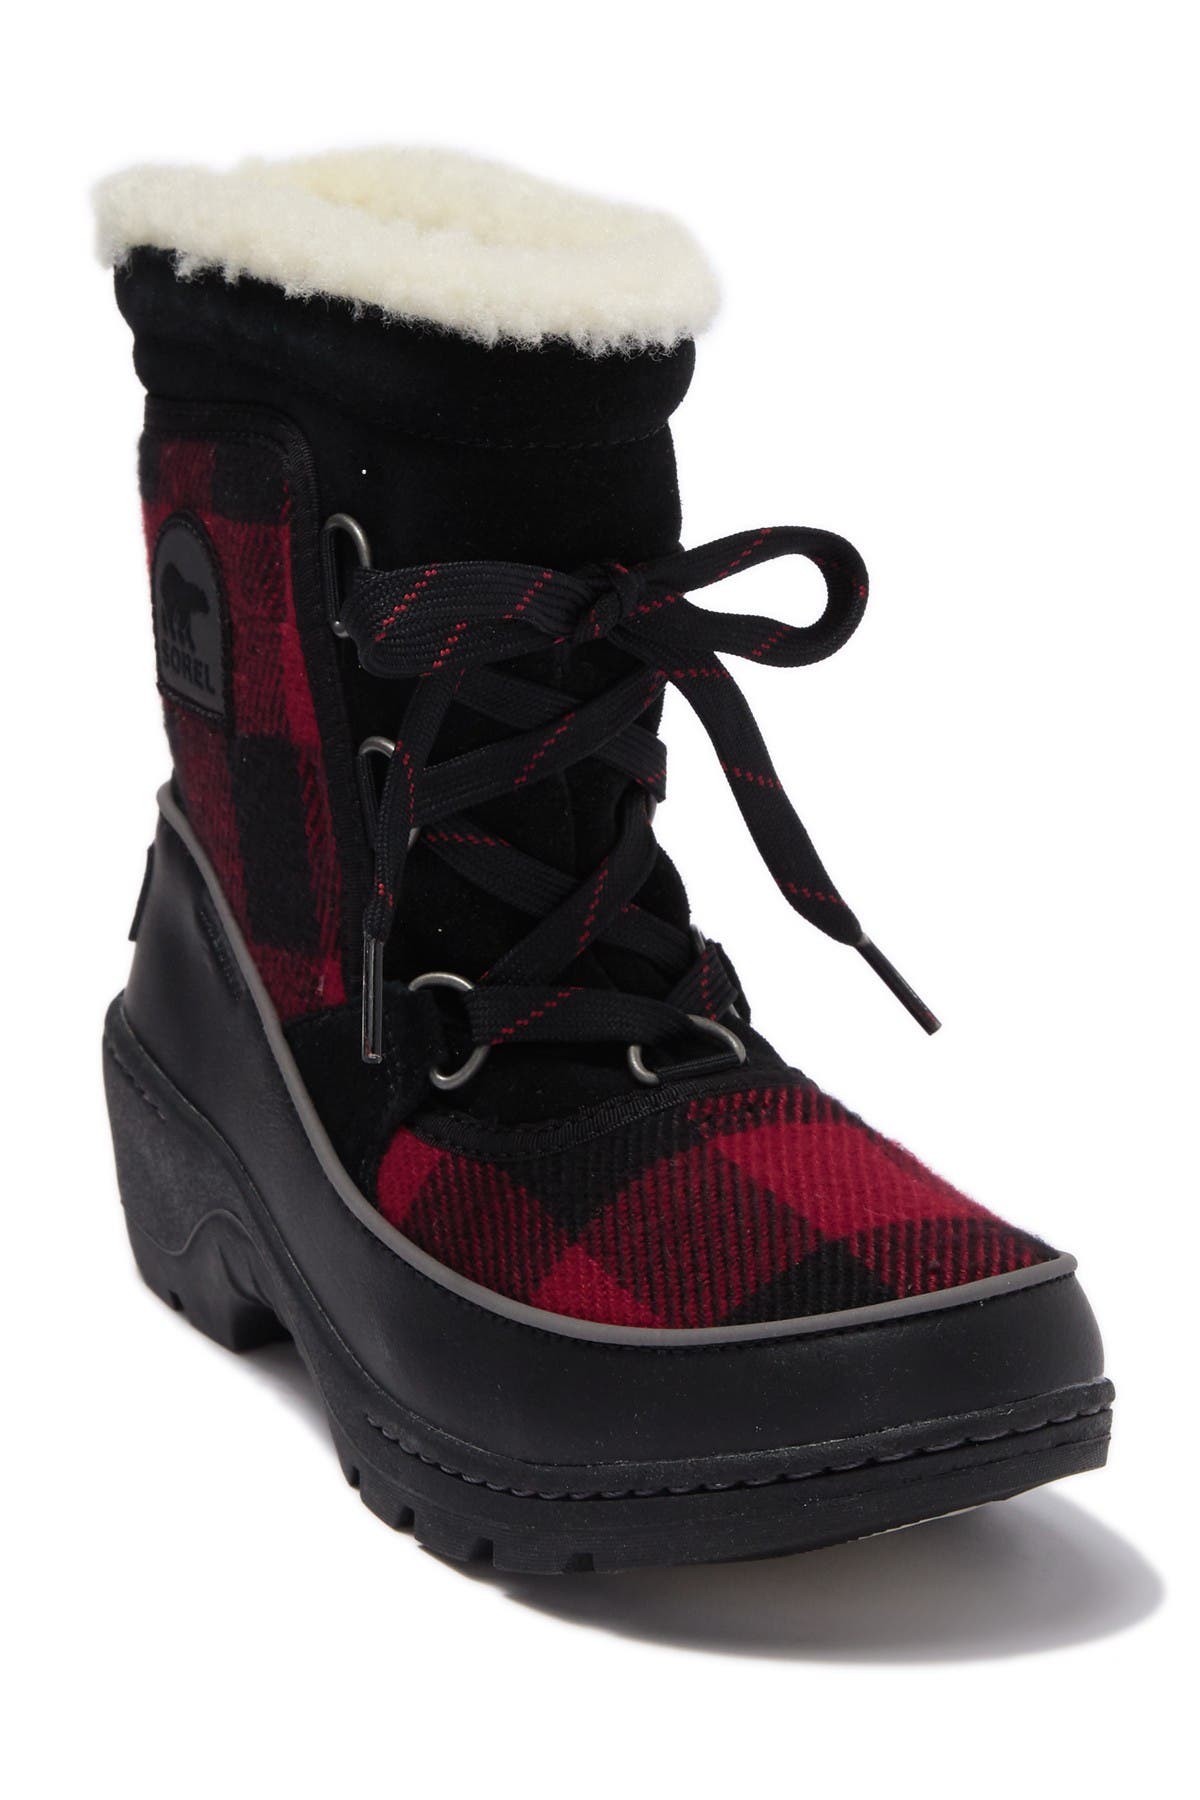 sorel women's tivoli iii waterproof winter boots